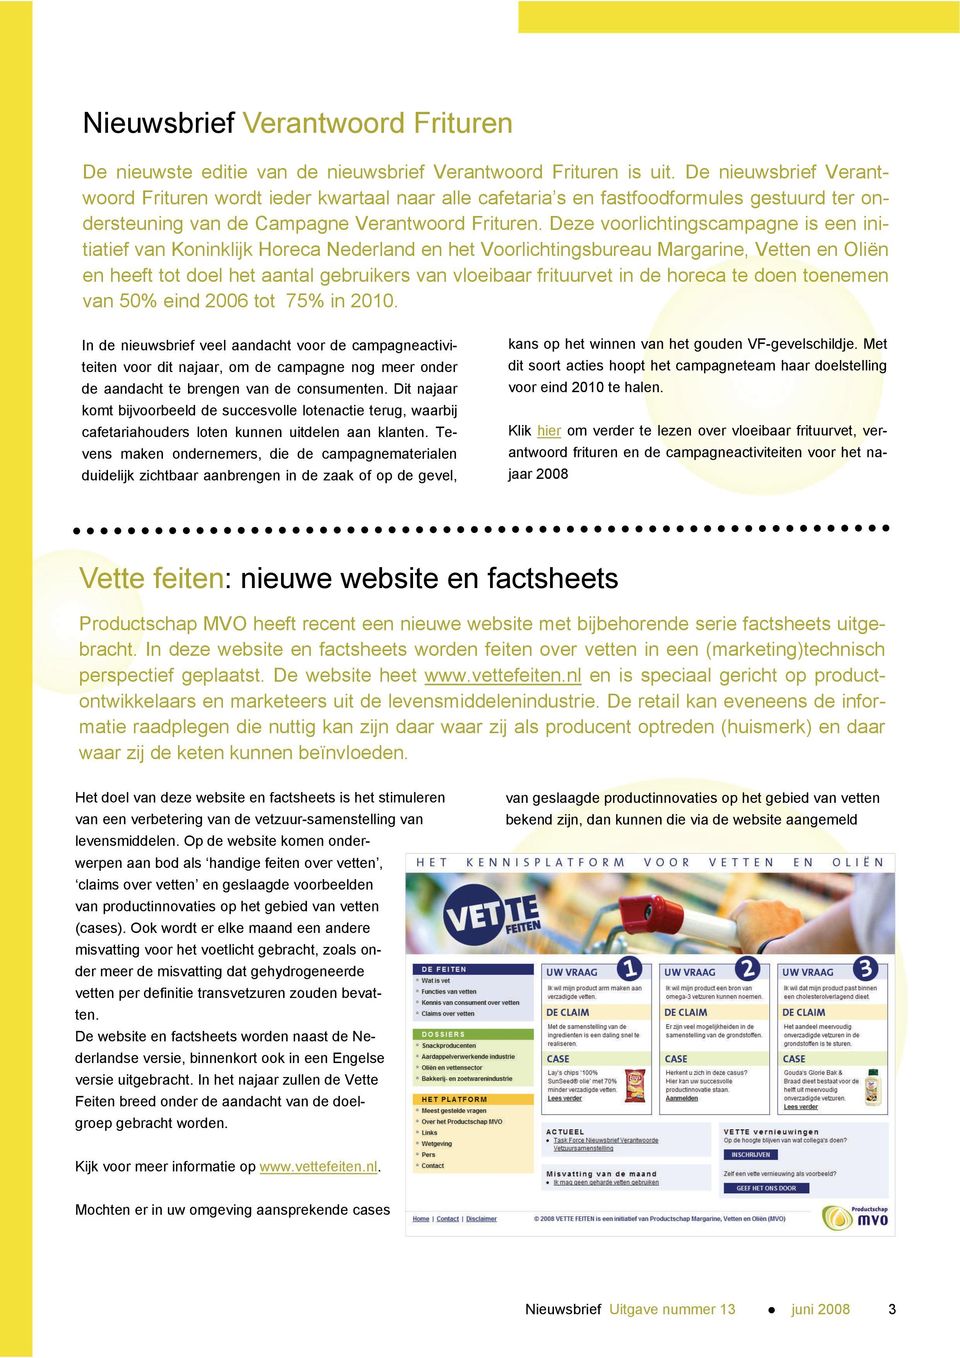 Deze voorlichtingscampagne is een initiatief van Koninklijk Horeca Nederland en het Voorlichtingsbureau Margarine, Vetten en Oliën en heeft tot doel het aantal gebruikers van vloeibaar frituurvet in